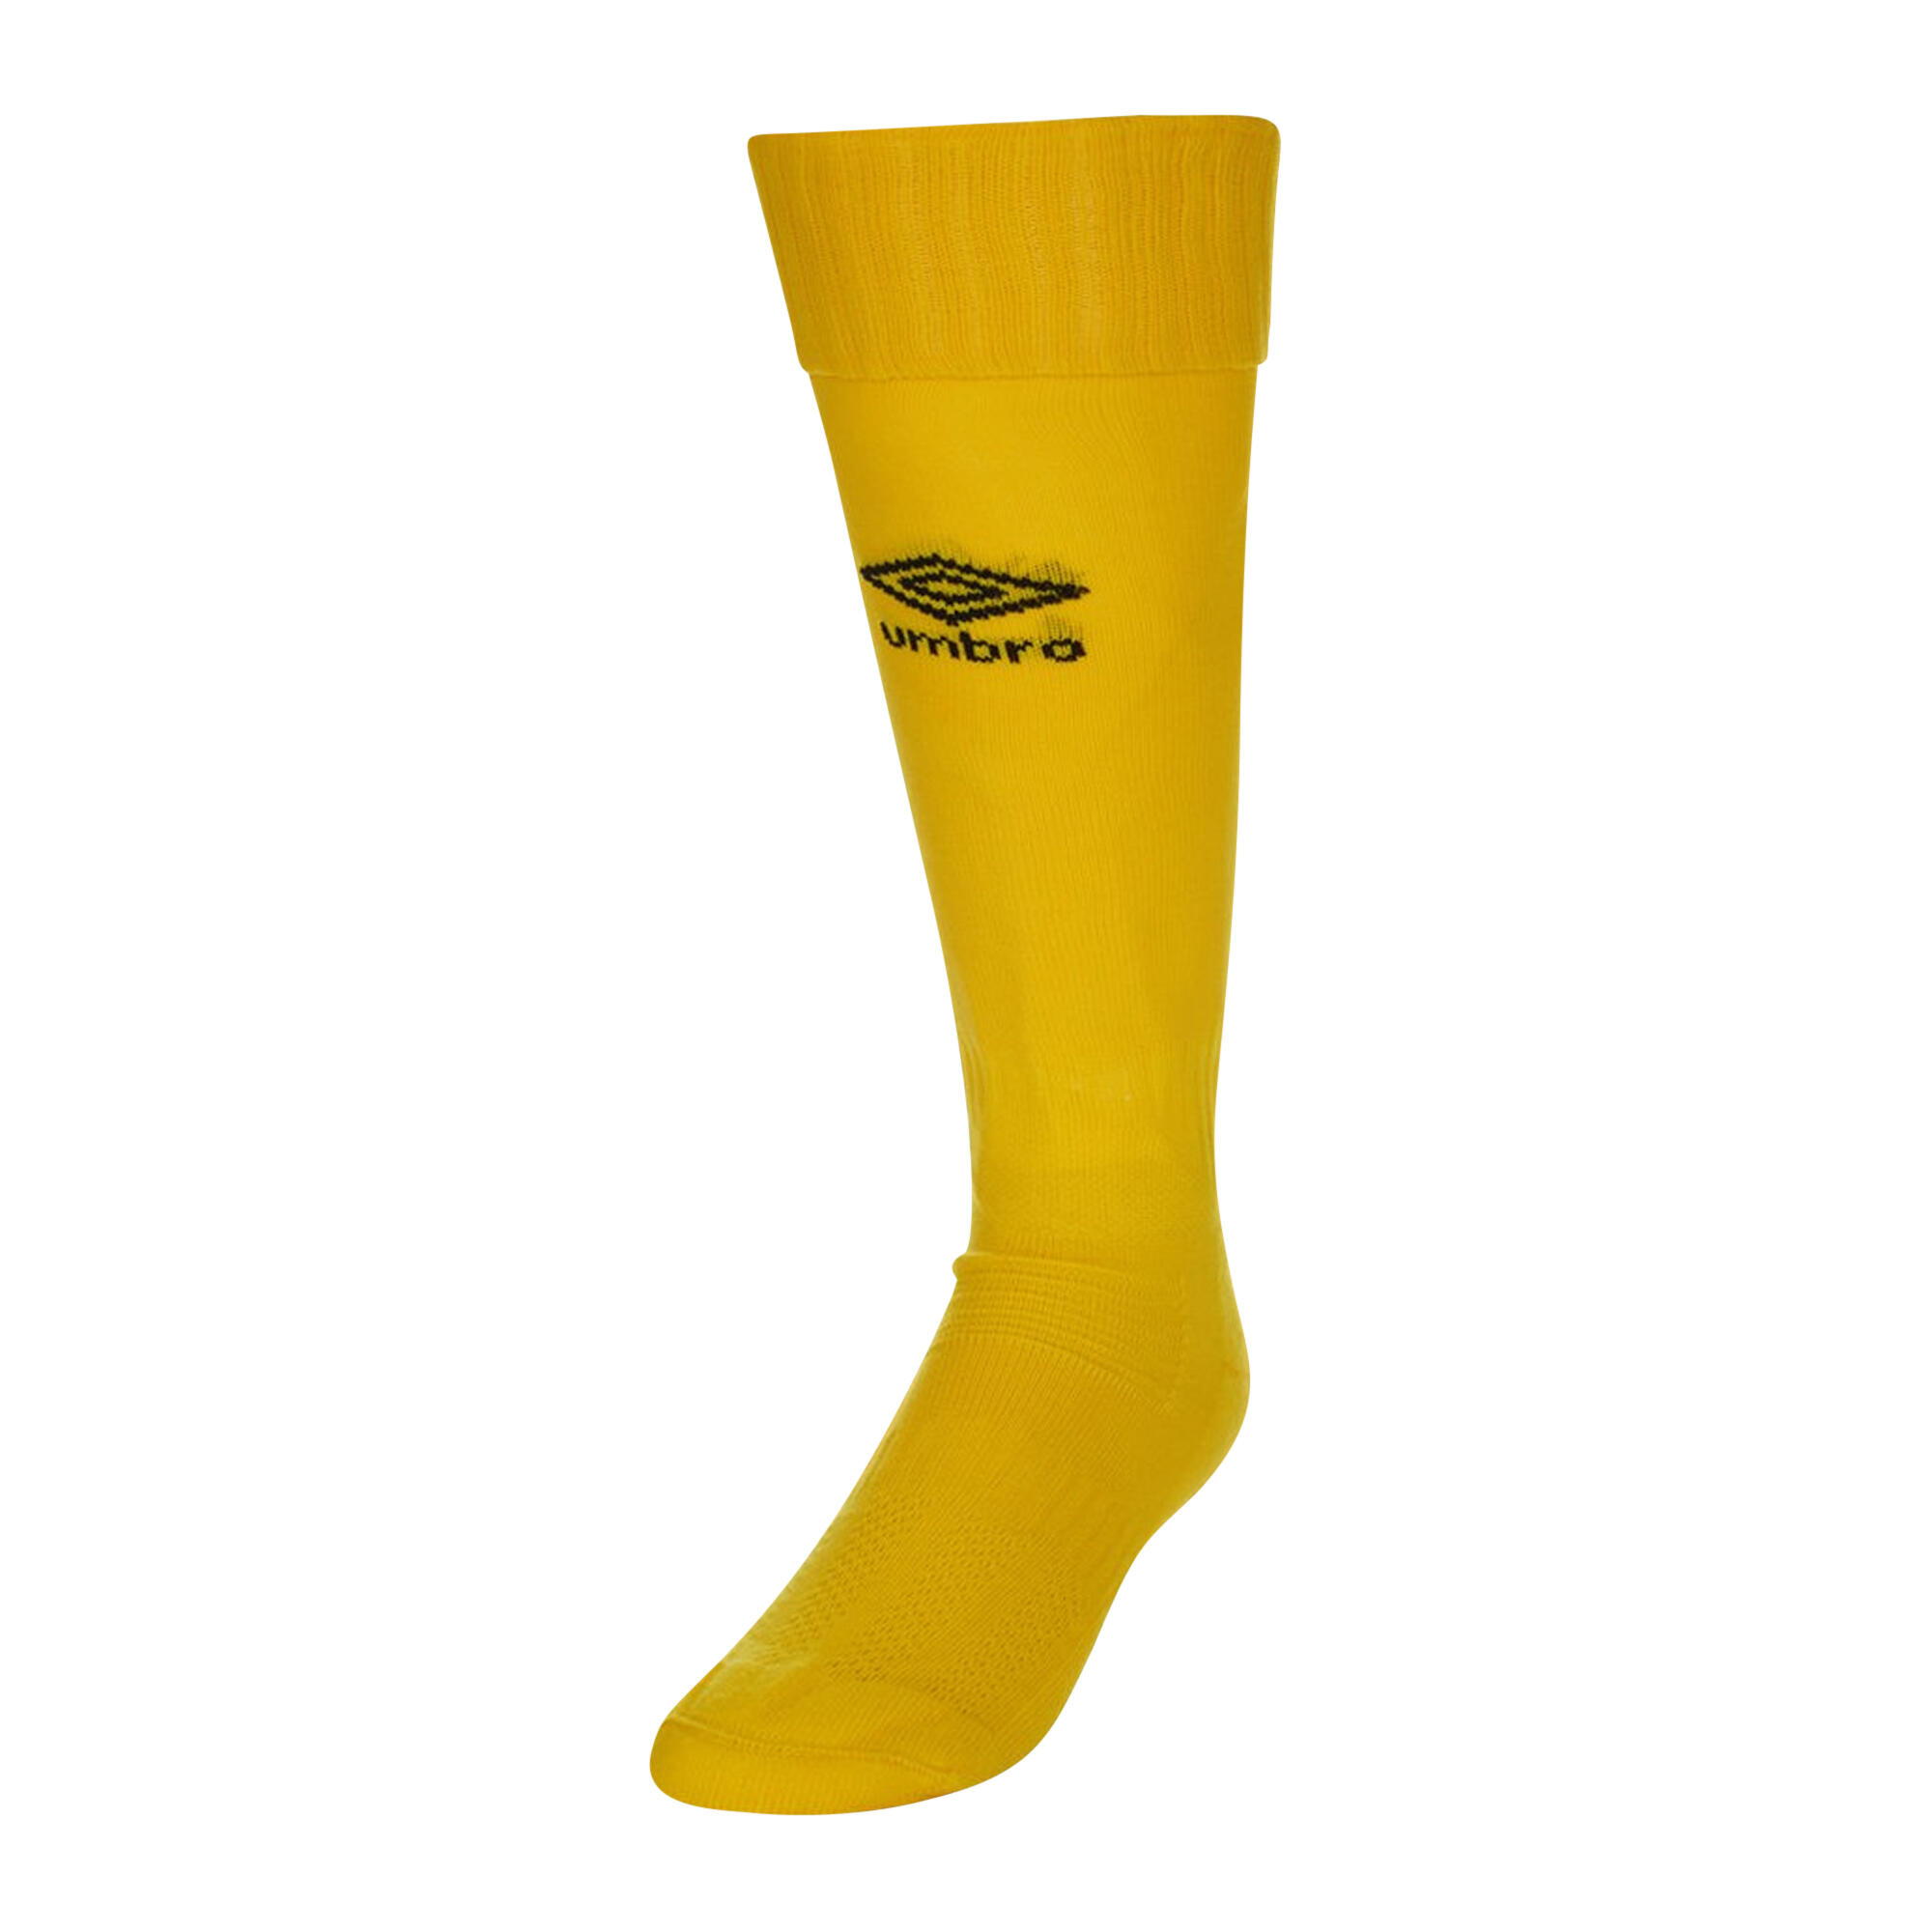 UMBRO Childrens/Kids Classico Socks (Yellow)